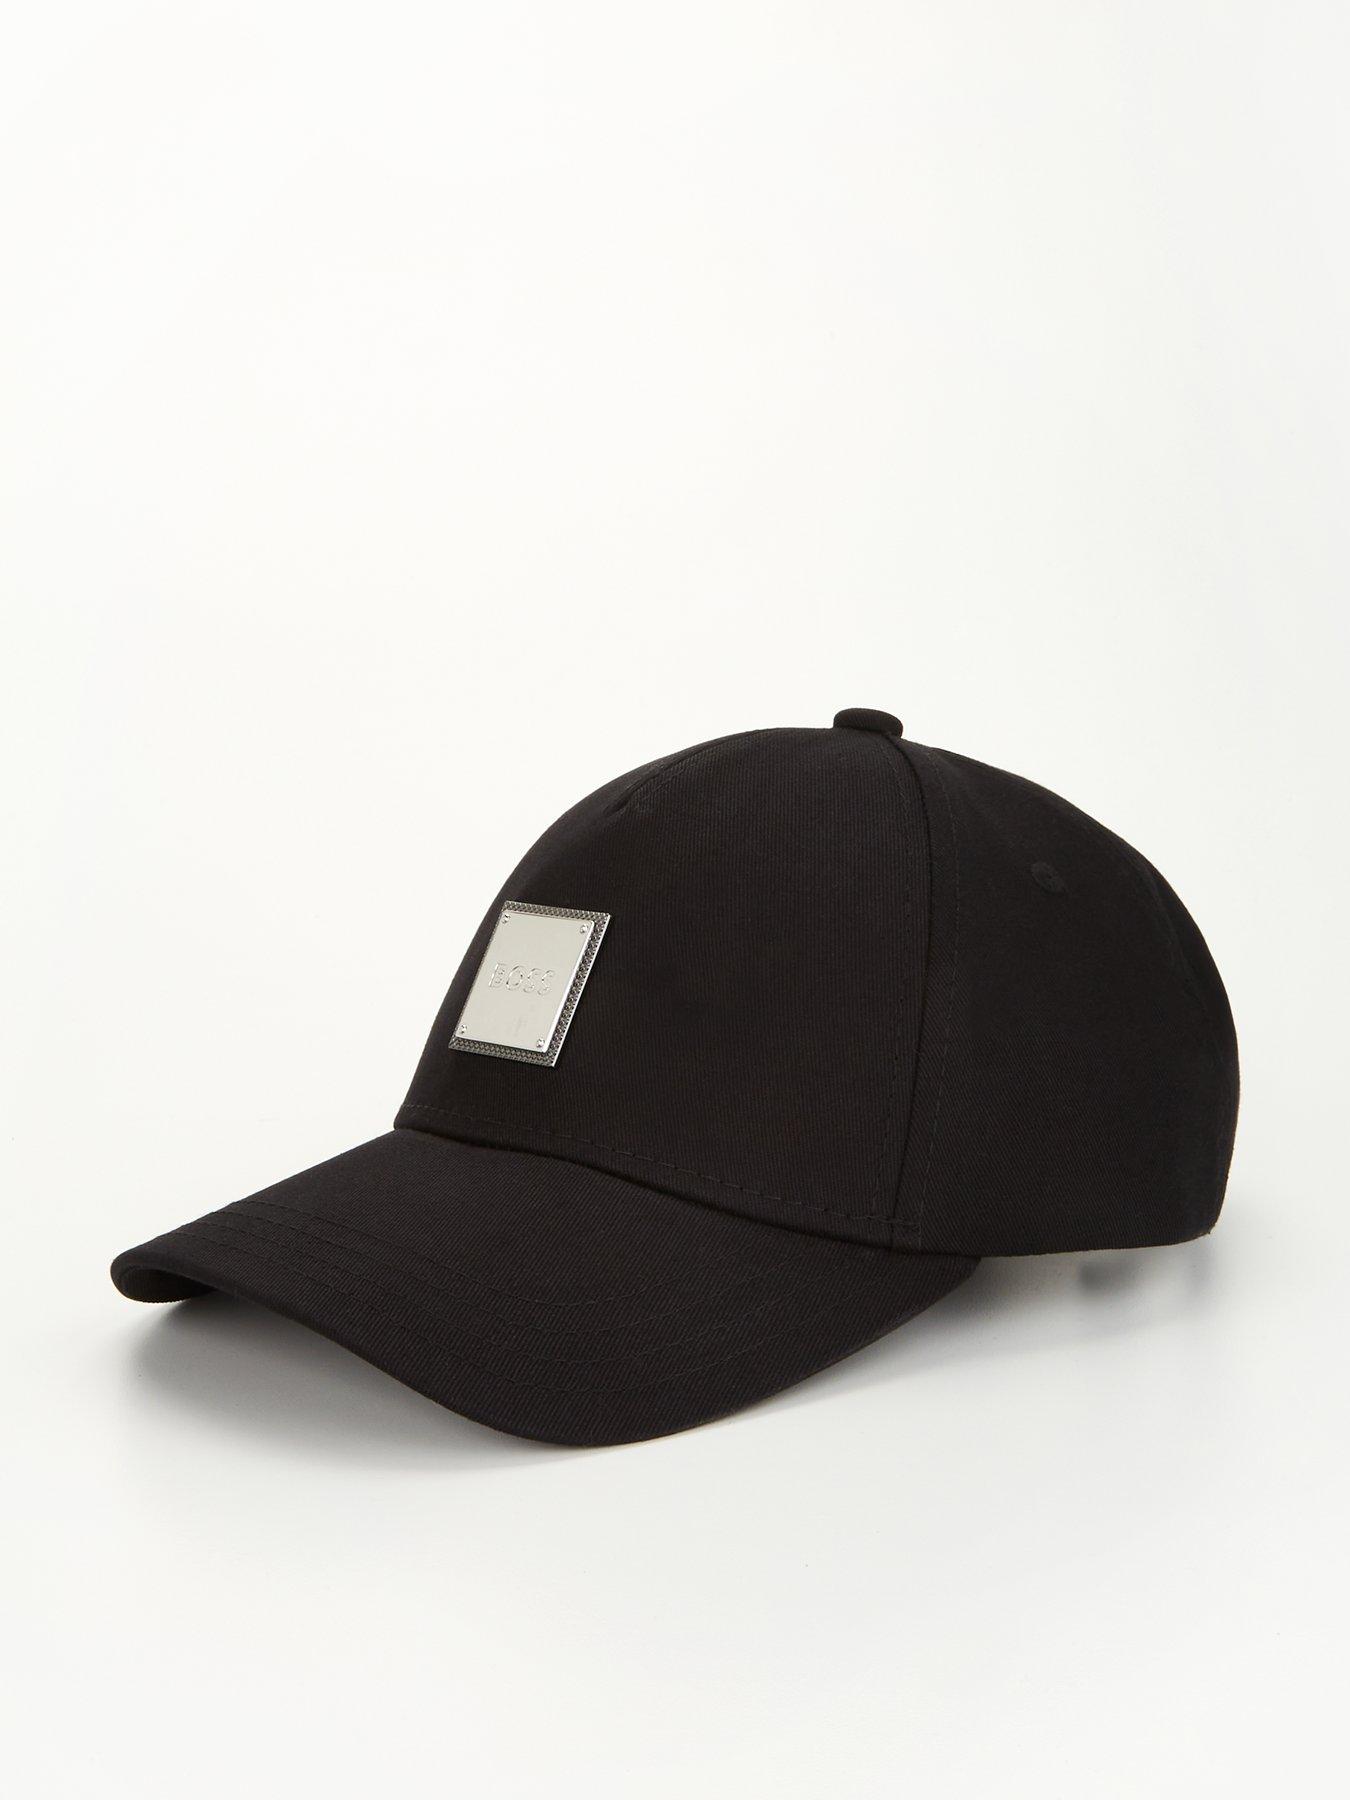 UNDER ARMOUR Golf 96 Hat - Black